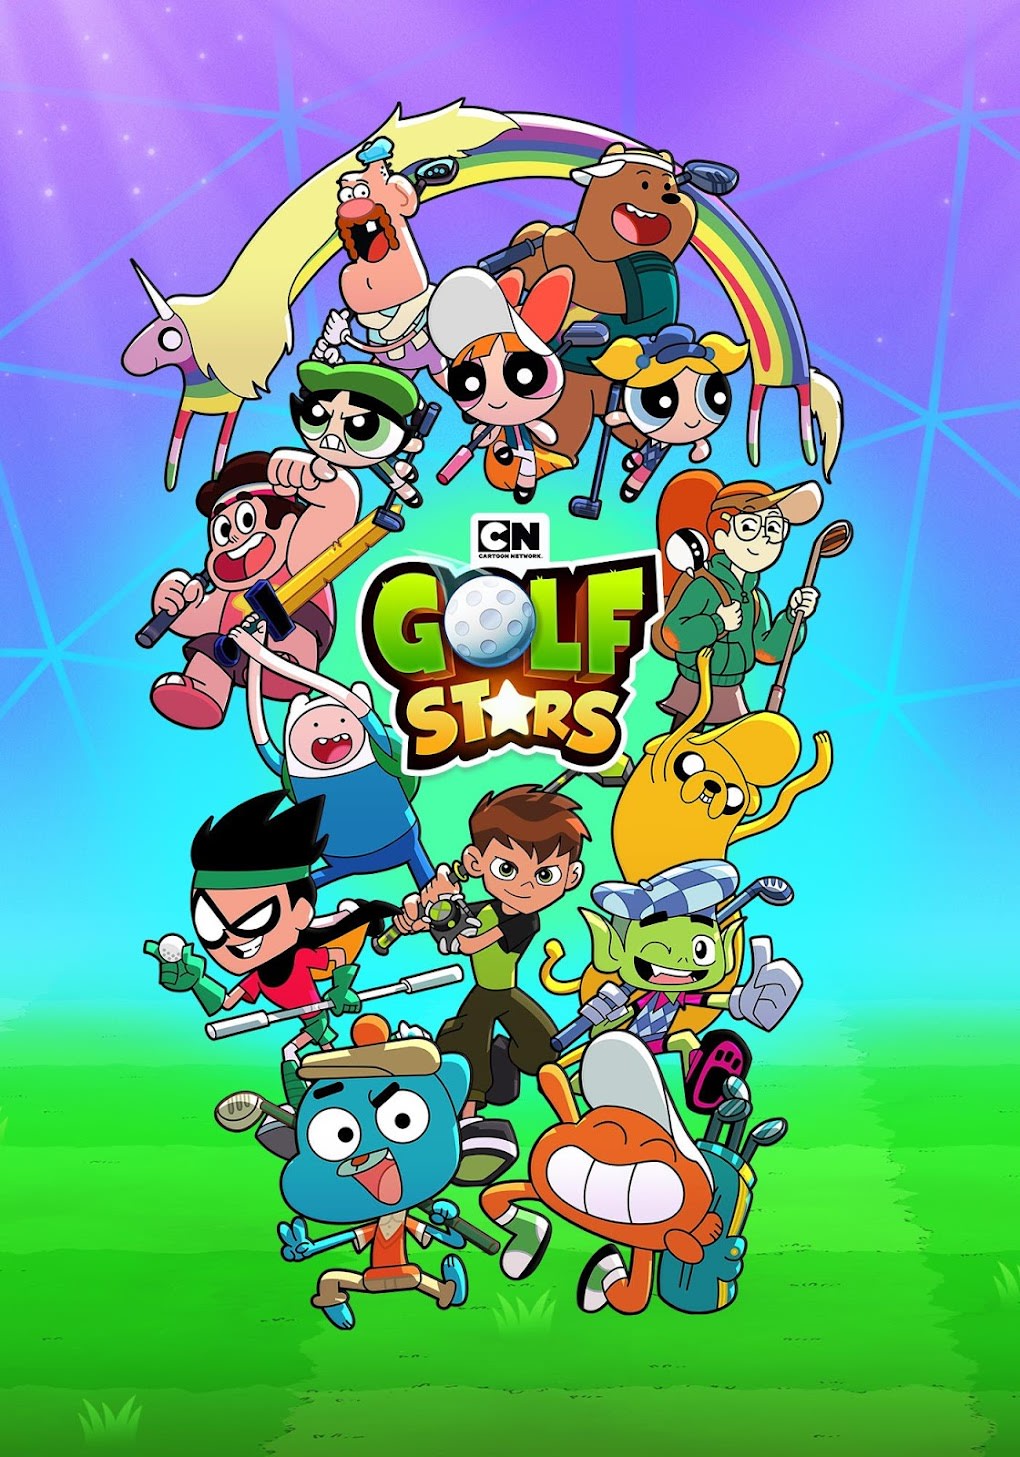 CARTOON NETWORK Fan: Cartoon Network lança jogo de tabuleiro de Hora de  Aventura nos E.U.A